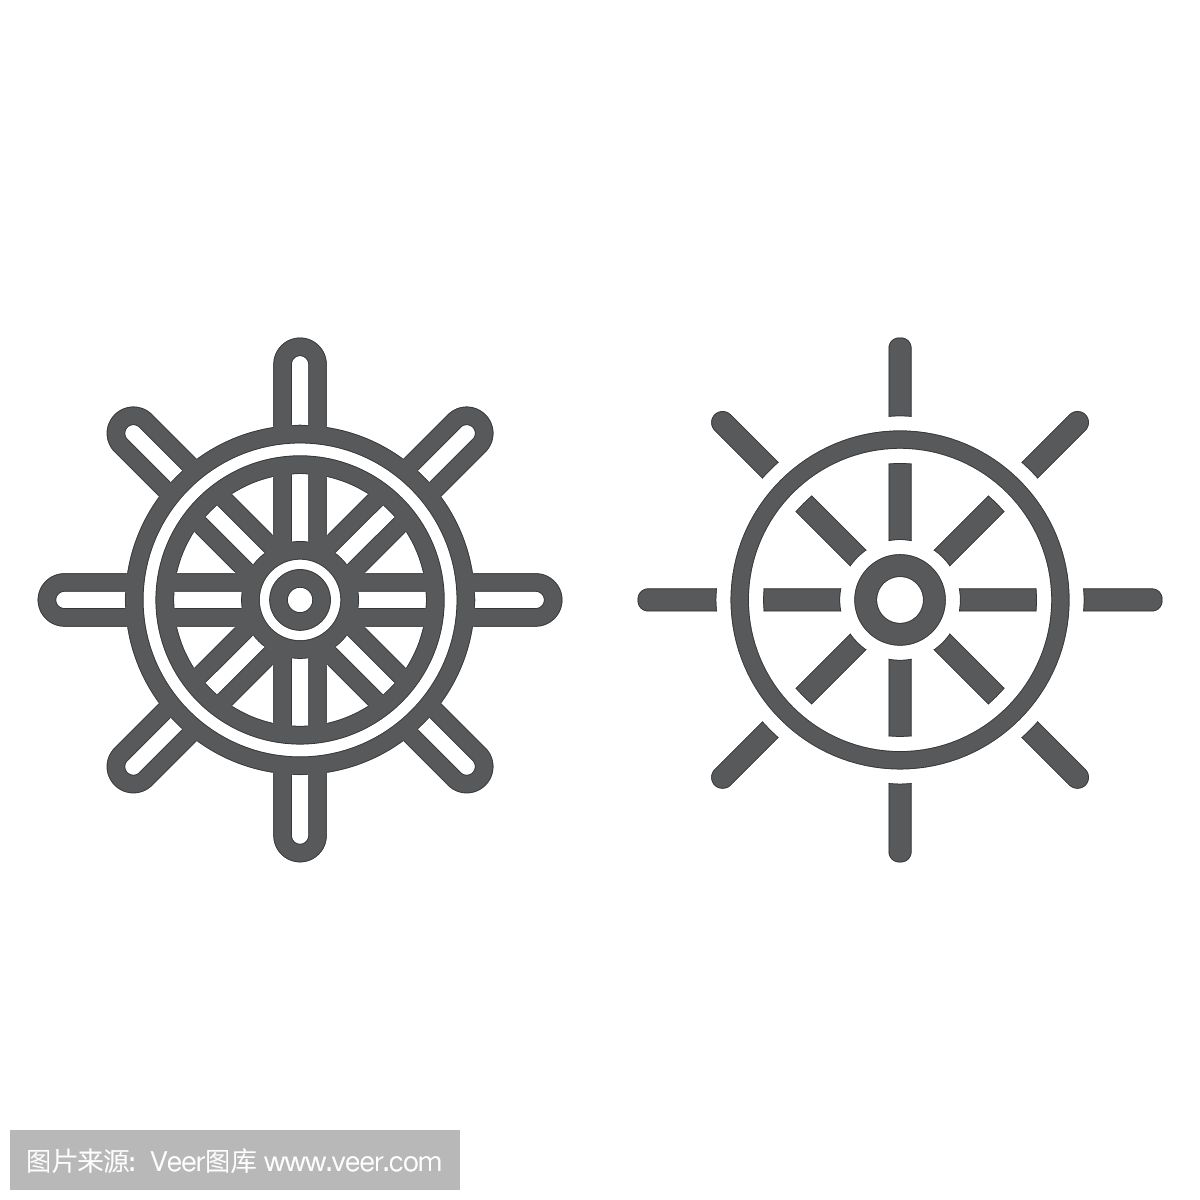 船舶方向盘线和标志符号图标,导航和地理,旅游